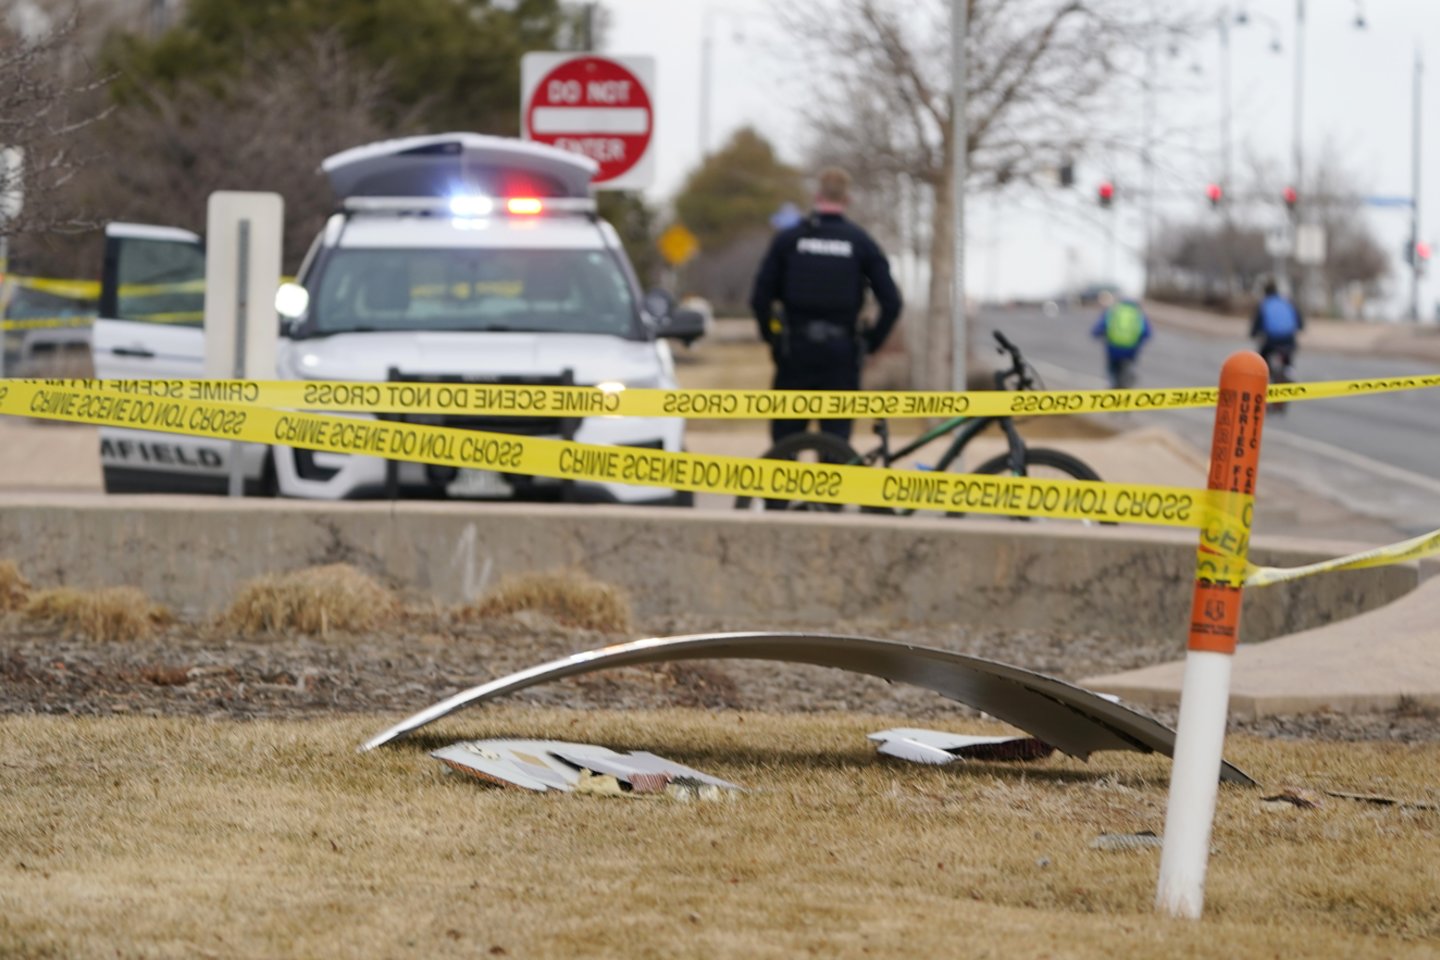 Šis incidentas praėjus mažiau kaip savaitei po kitos modifikacijos keleivinio „Boeing 777“ avarijos Jungtinėse Valstijose, kai nulūžus dviem variklio turbinos mentėms ant Denverio priemiesčių pažiro stambių nuolaužų.<br>AFP/Scanpix nuotr.